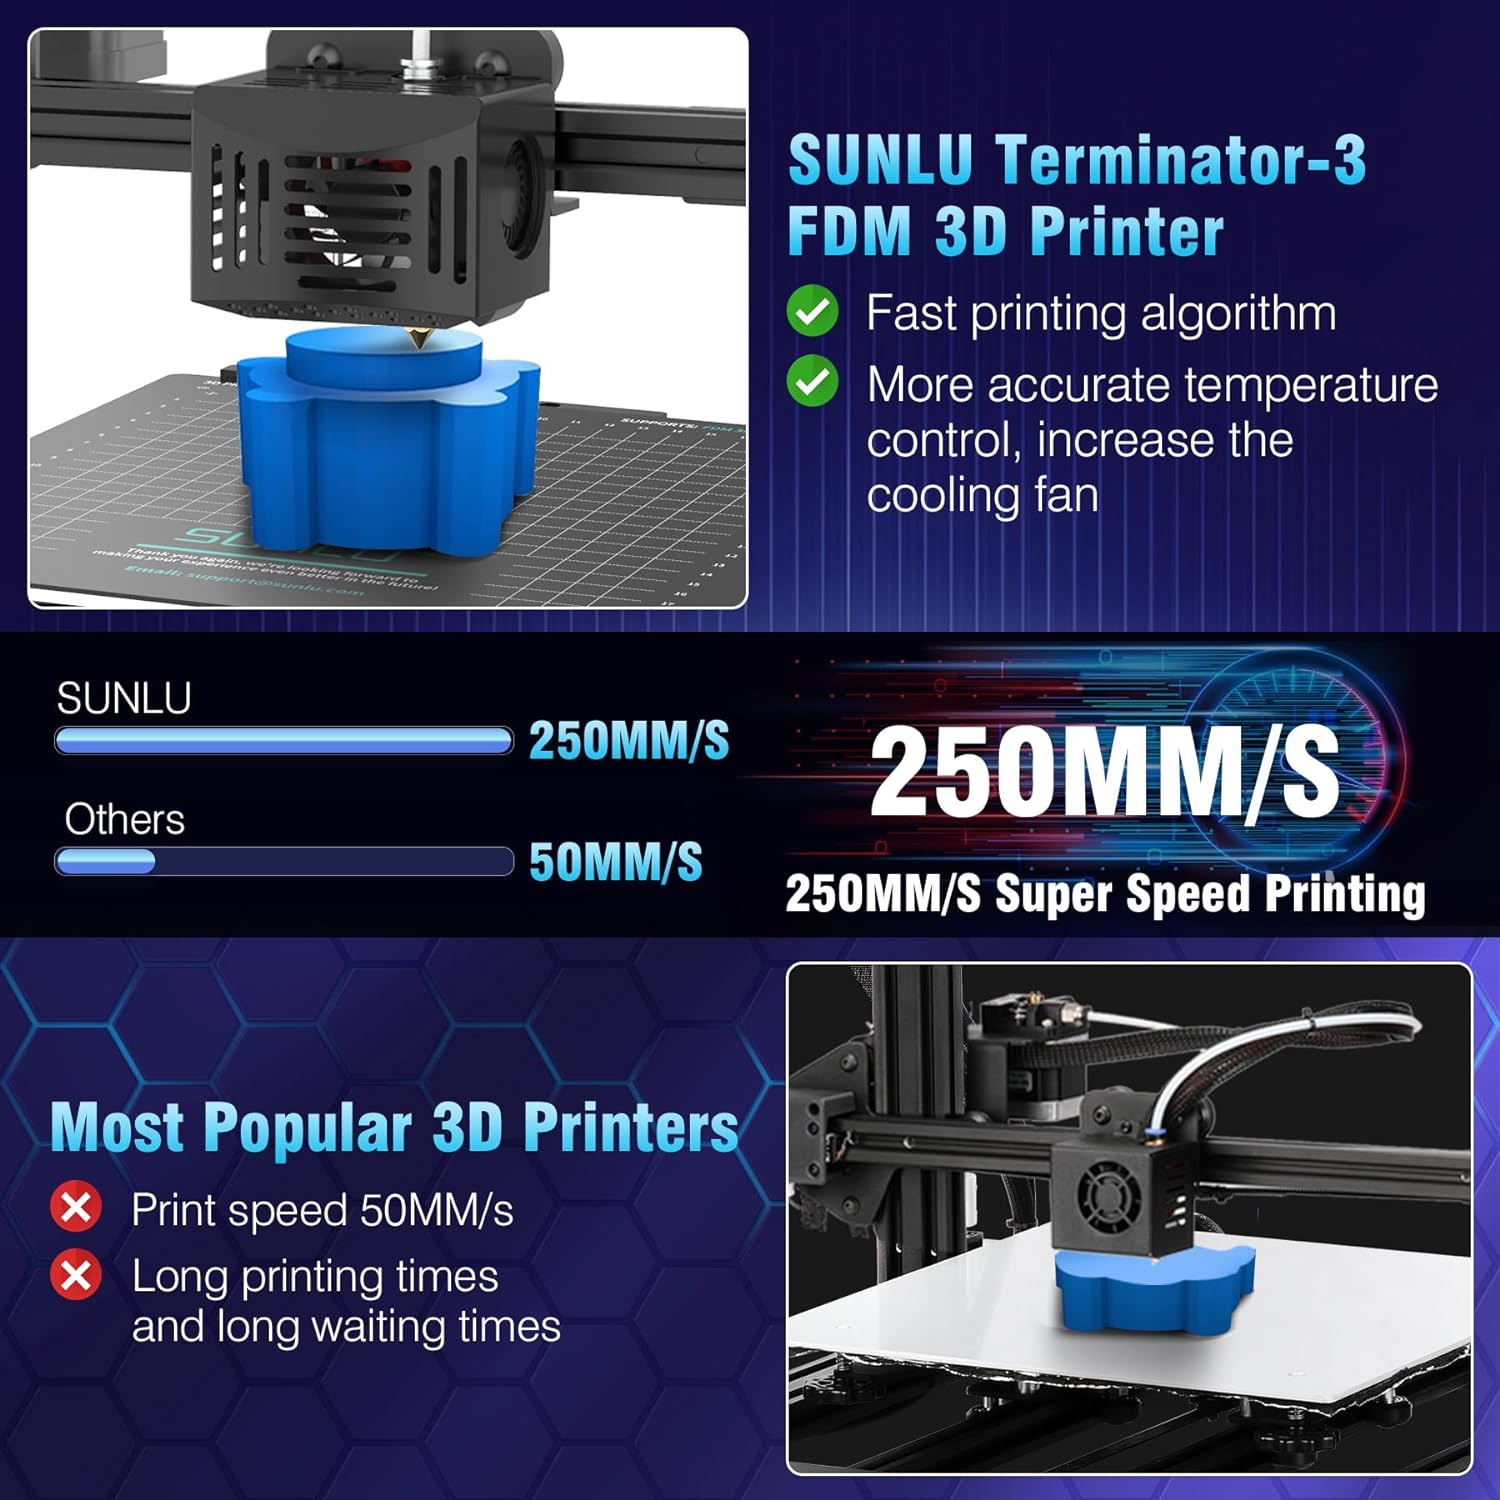 SUNLU T3 FDM 3D Printer Review